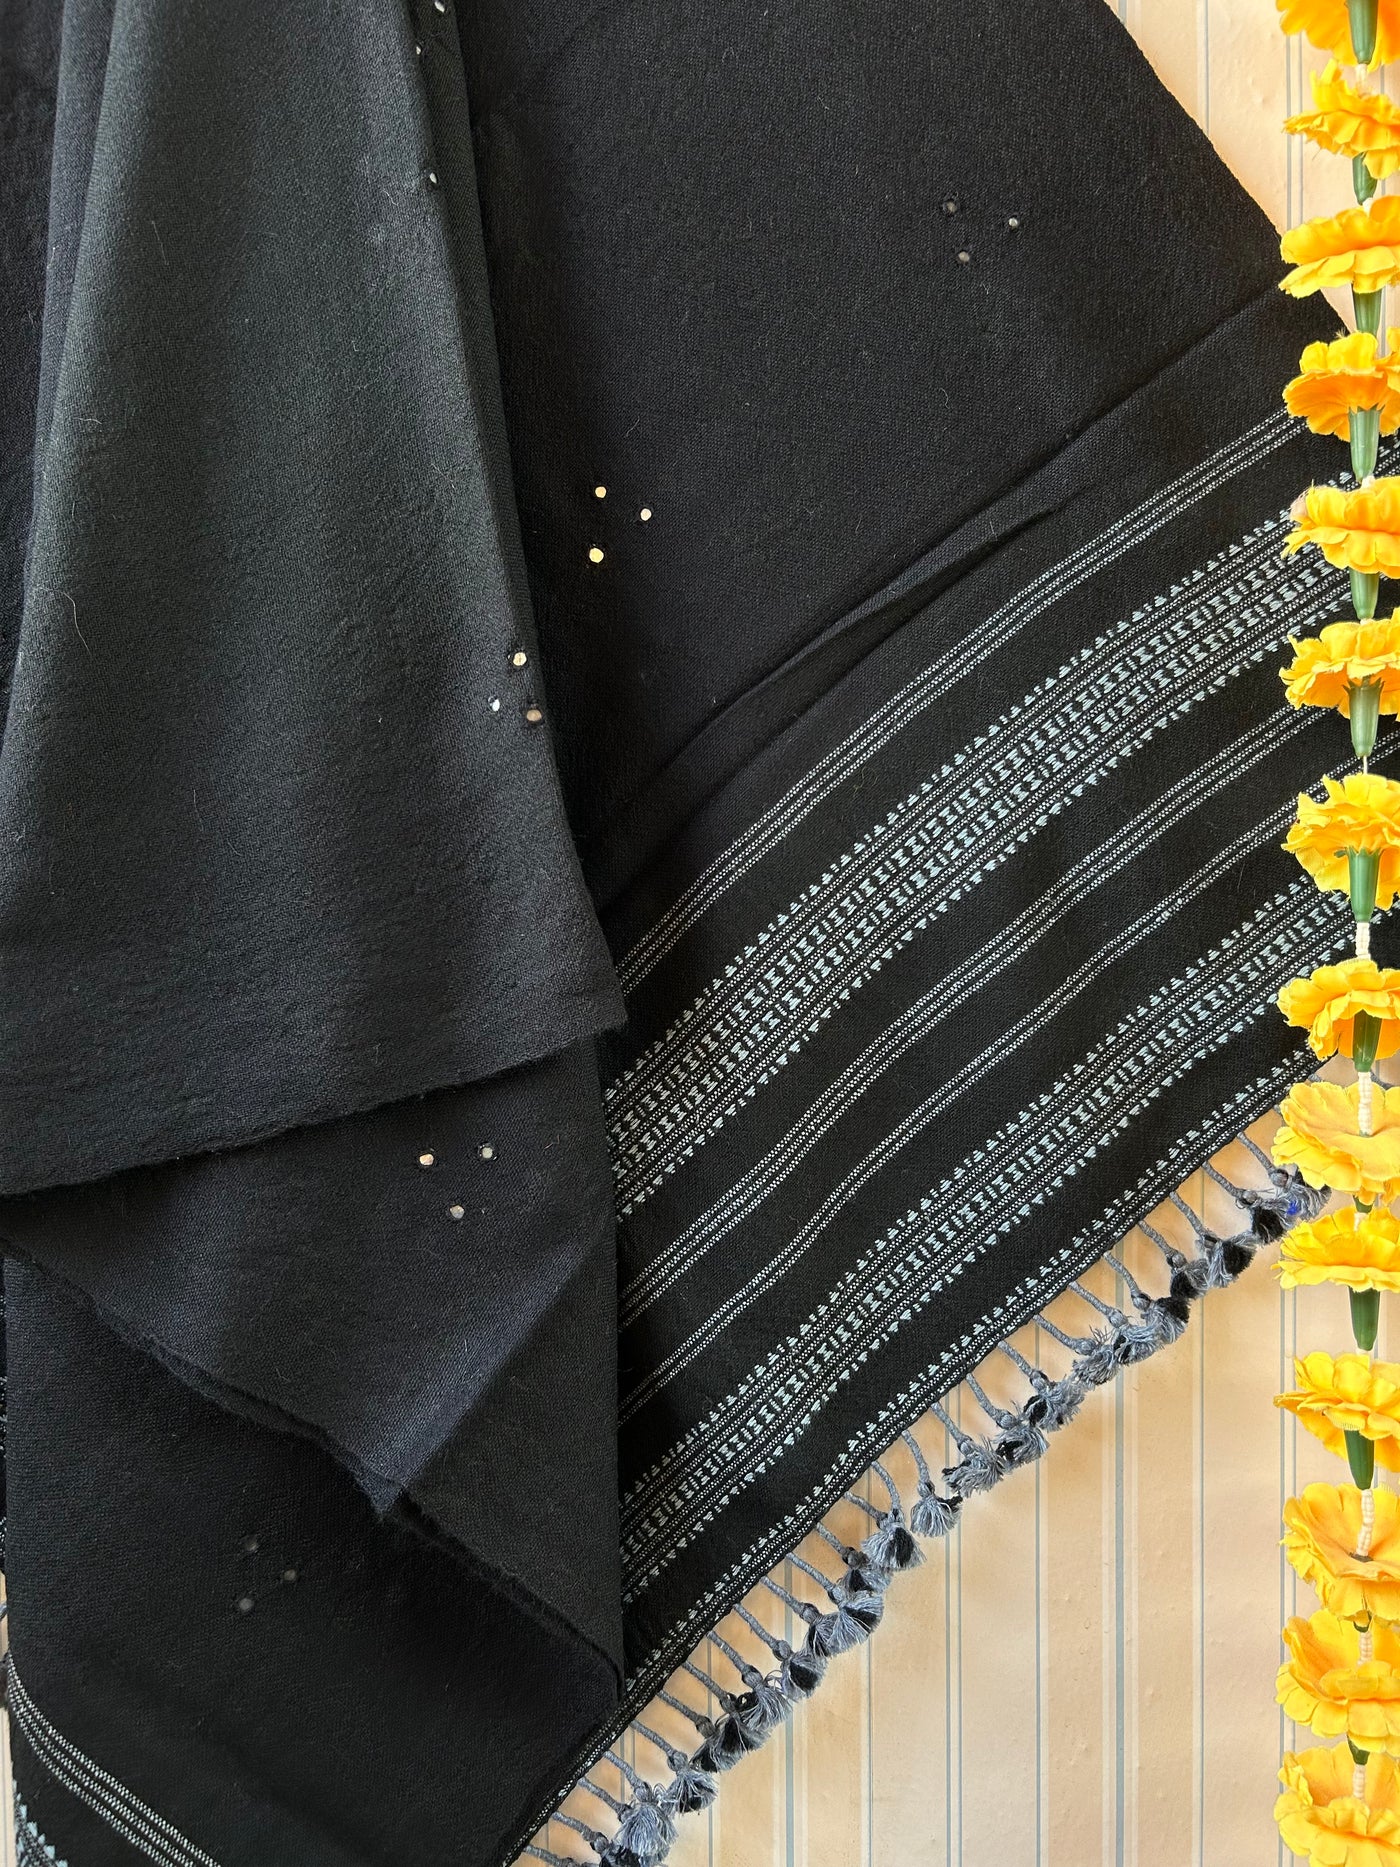 My Favourite Black: Handloom Marino Wool bhujodi shawl with mirror work